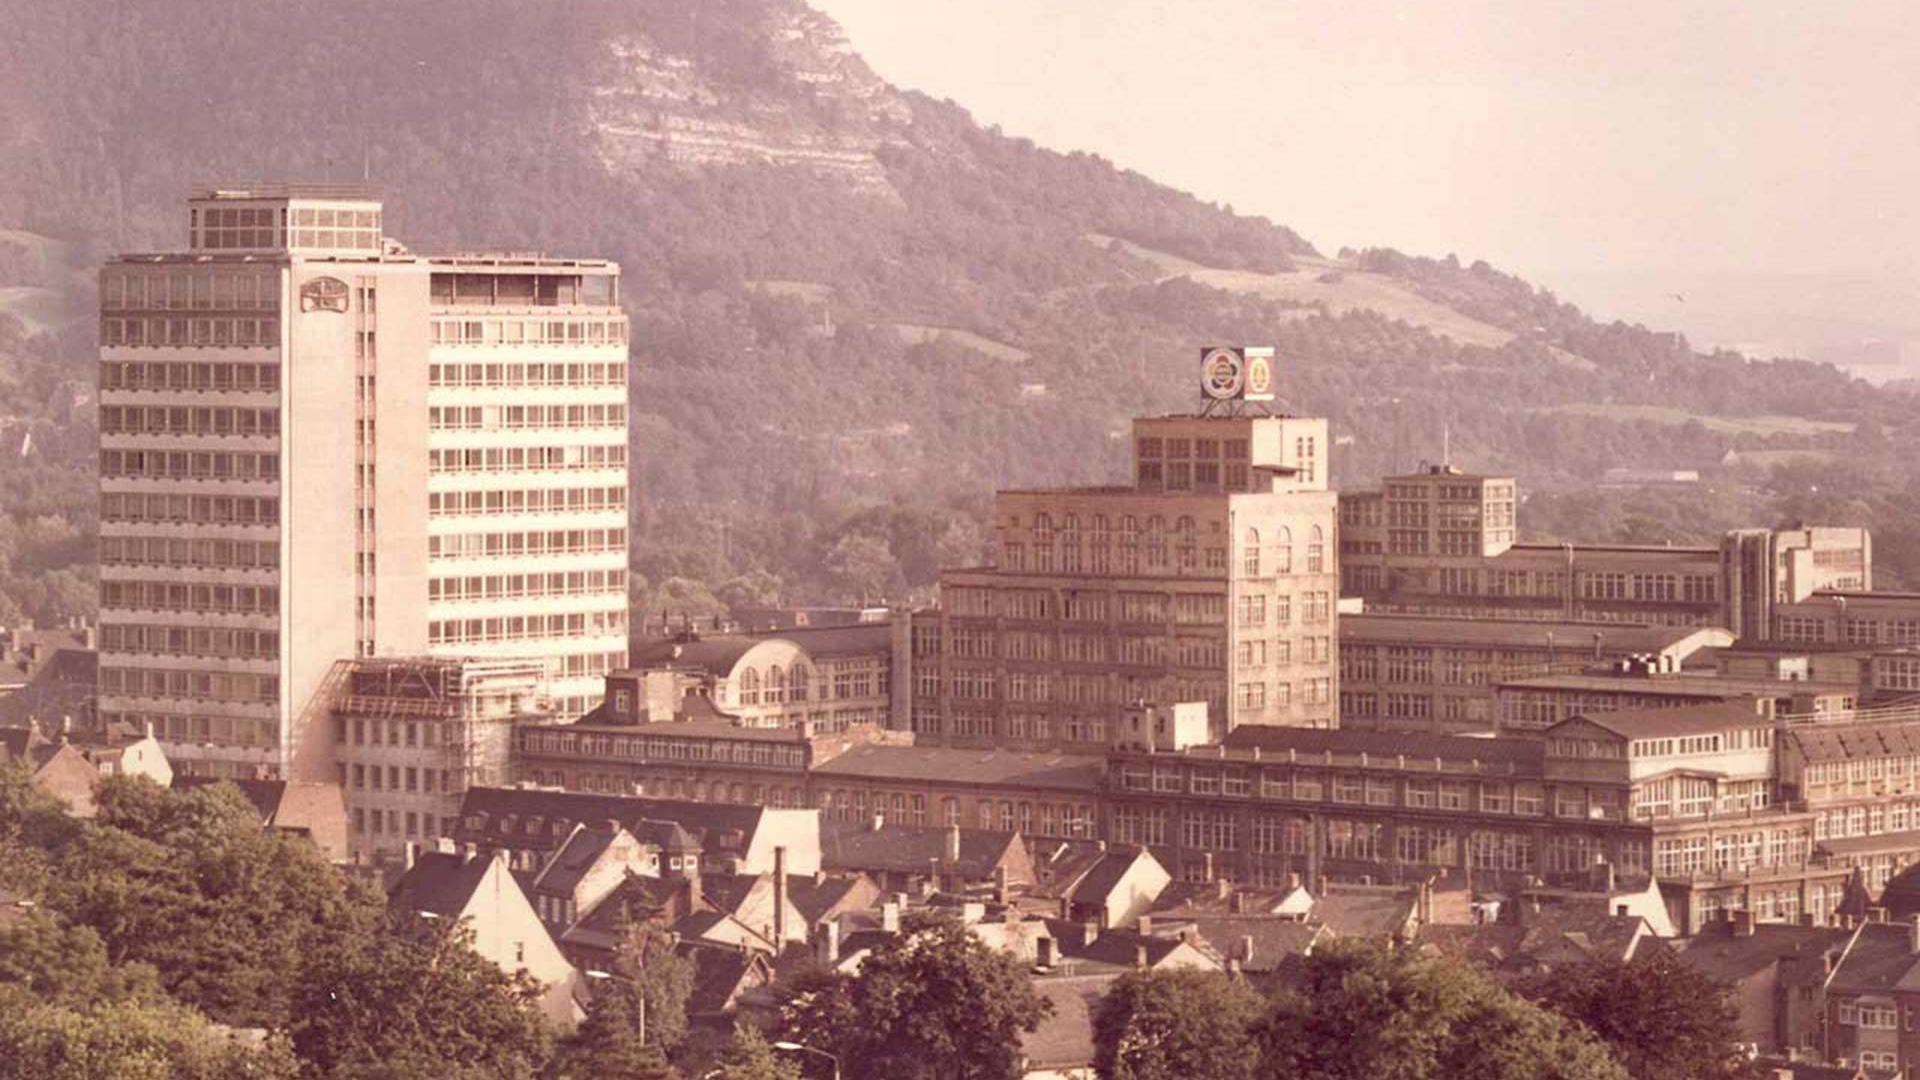 VEB Carl Zeiss Jena | Das Unternehmen in Jena wurde 1948 verstaatlicht. Seit 1965 wurde es zum führenden Kombinat im Bereich der Optik umgeformt, das 1989 mehr als 70.000 Beschäftigte hatte.